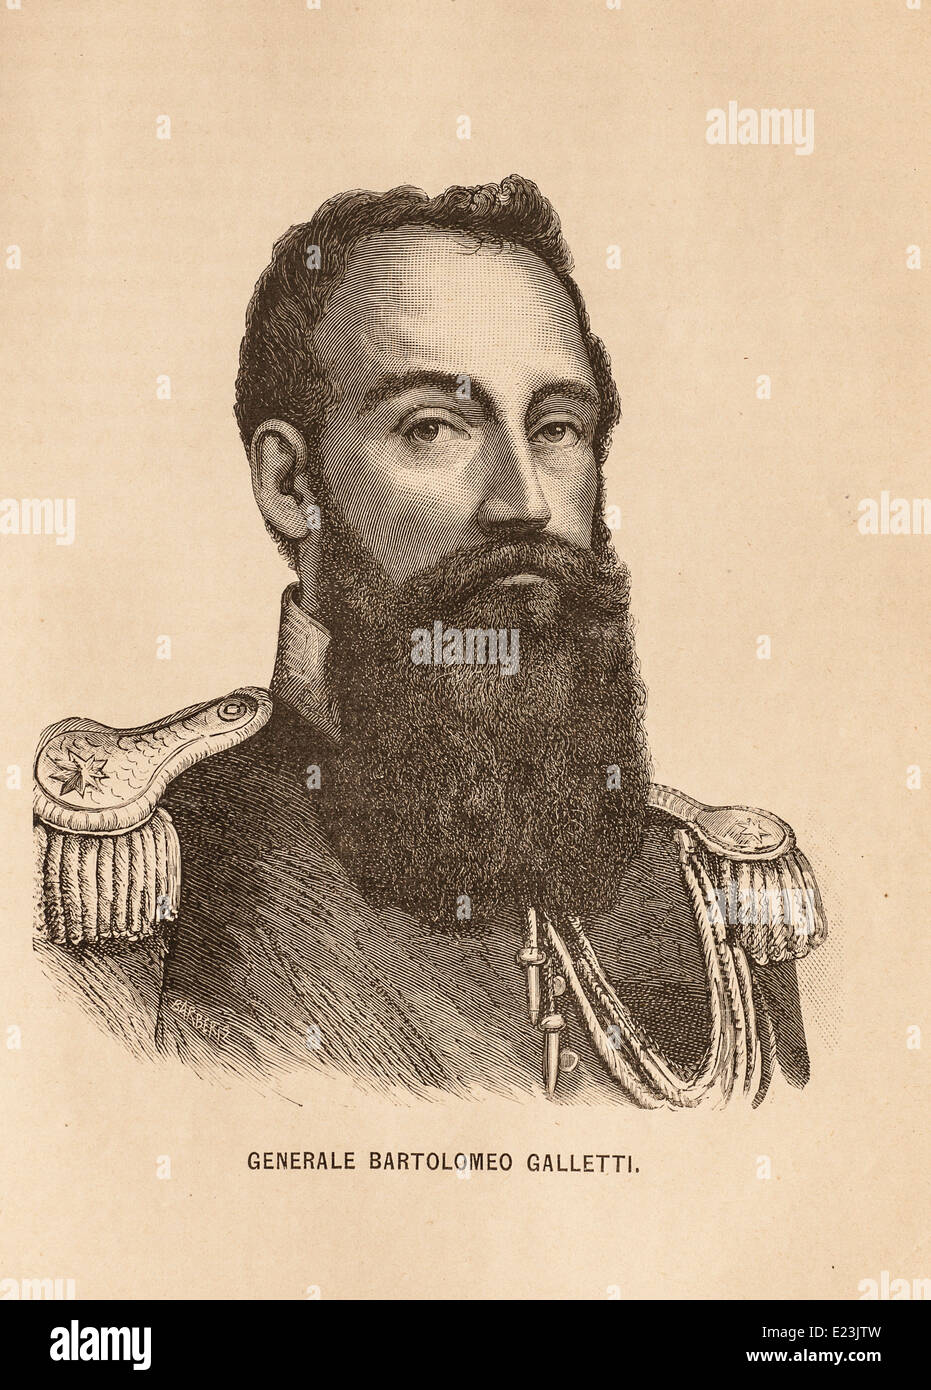 Giuseppe Mazzini du livre de Jessie W. Mario de vie de Mazzini. Portrait du général Bartolomeo Galletti Banque D'Images